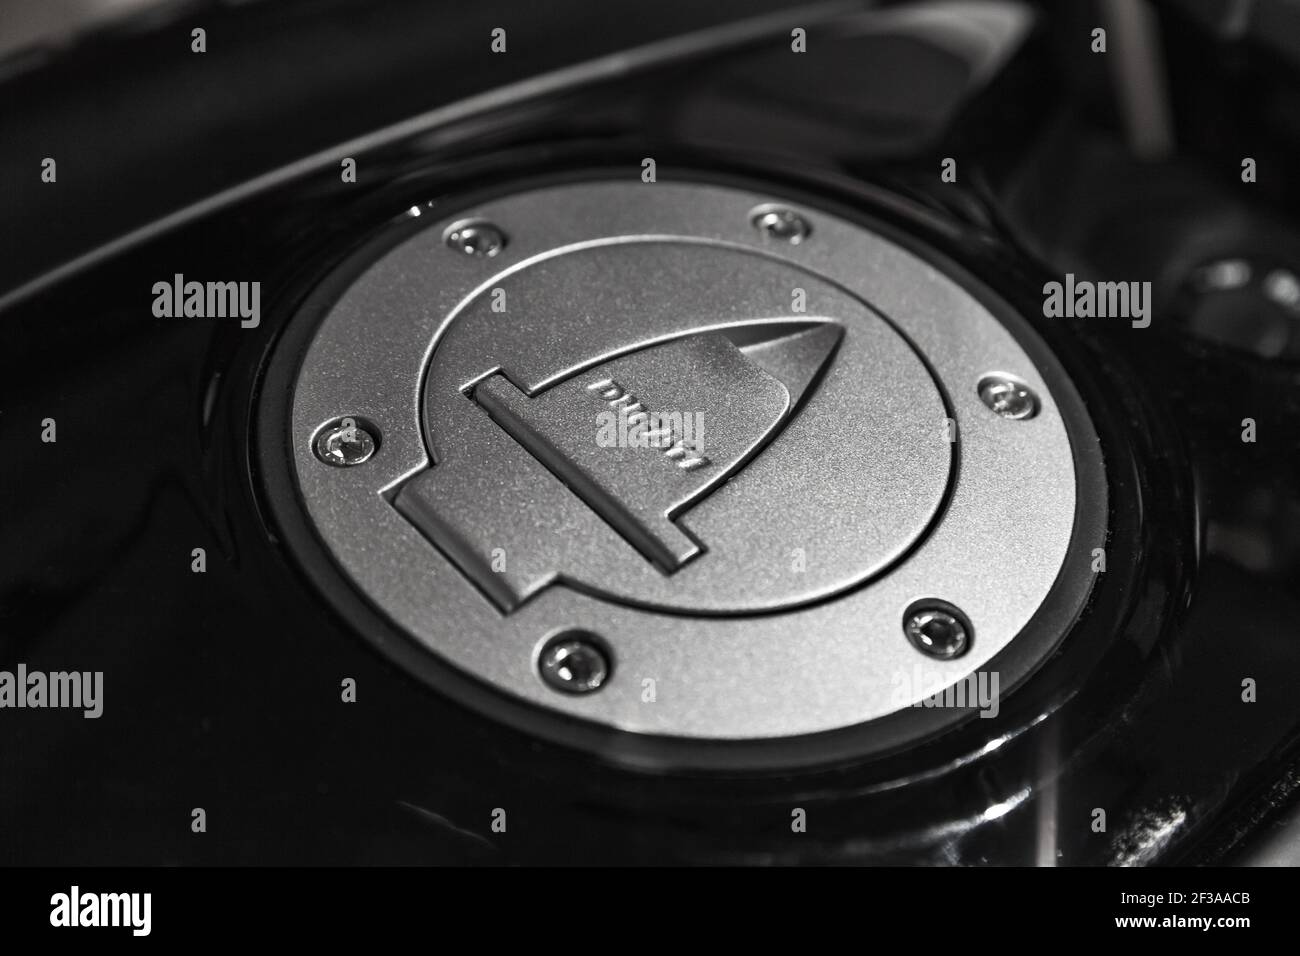 Saint-Pétersbourg, Russie - 3 avril 2019 : détails de la moto Ducati, bouchon de carburant gris métallisé, photo de gros plan Banque D'Images